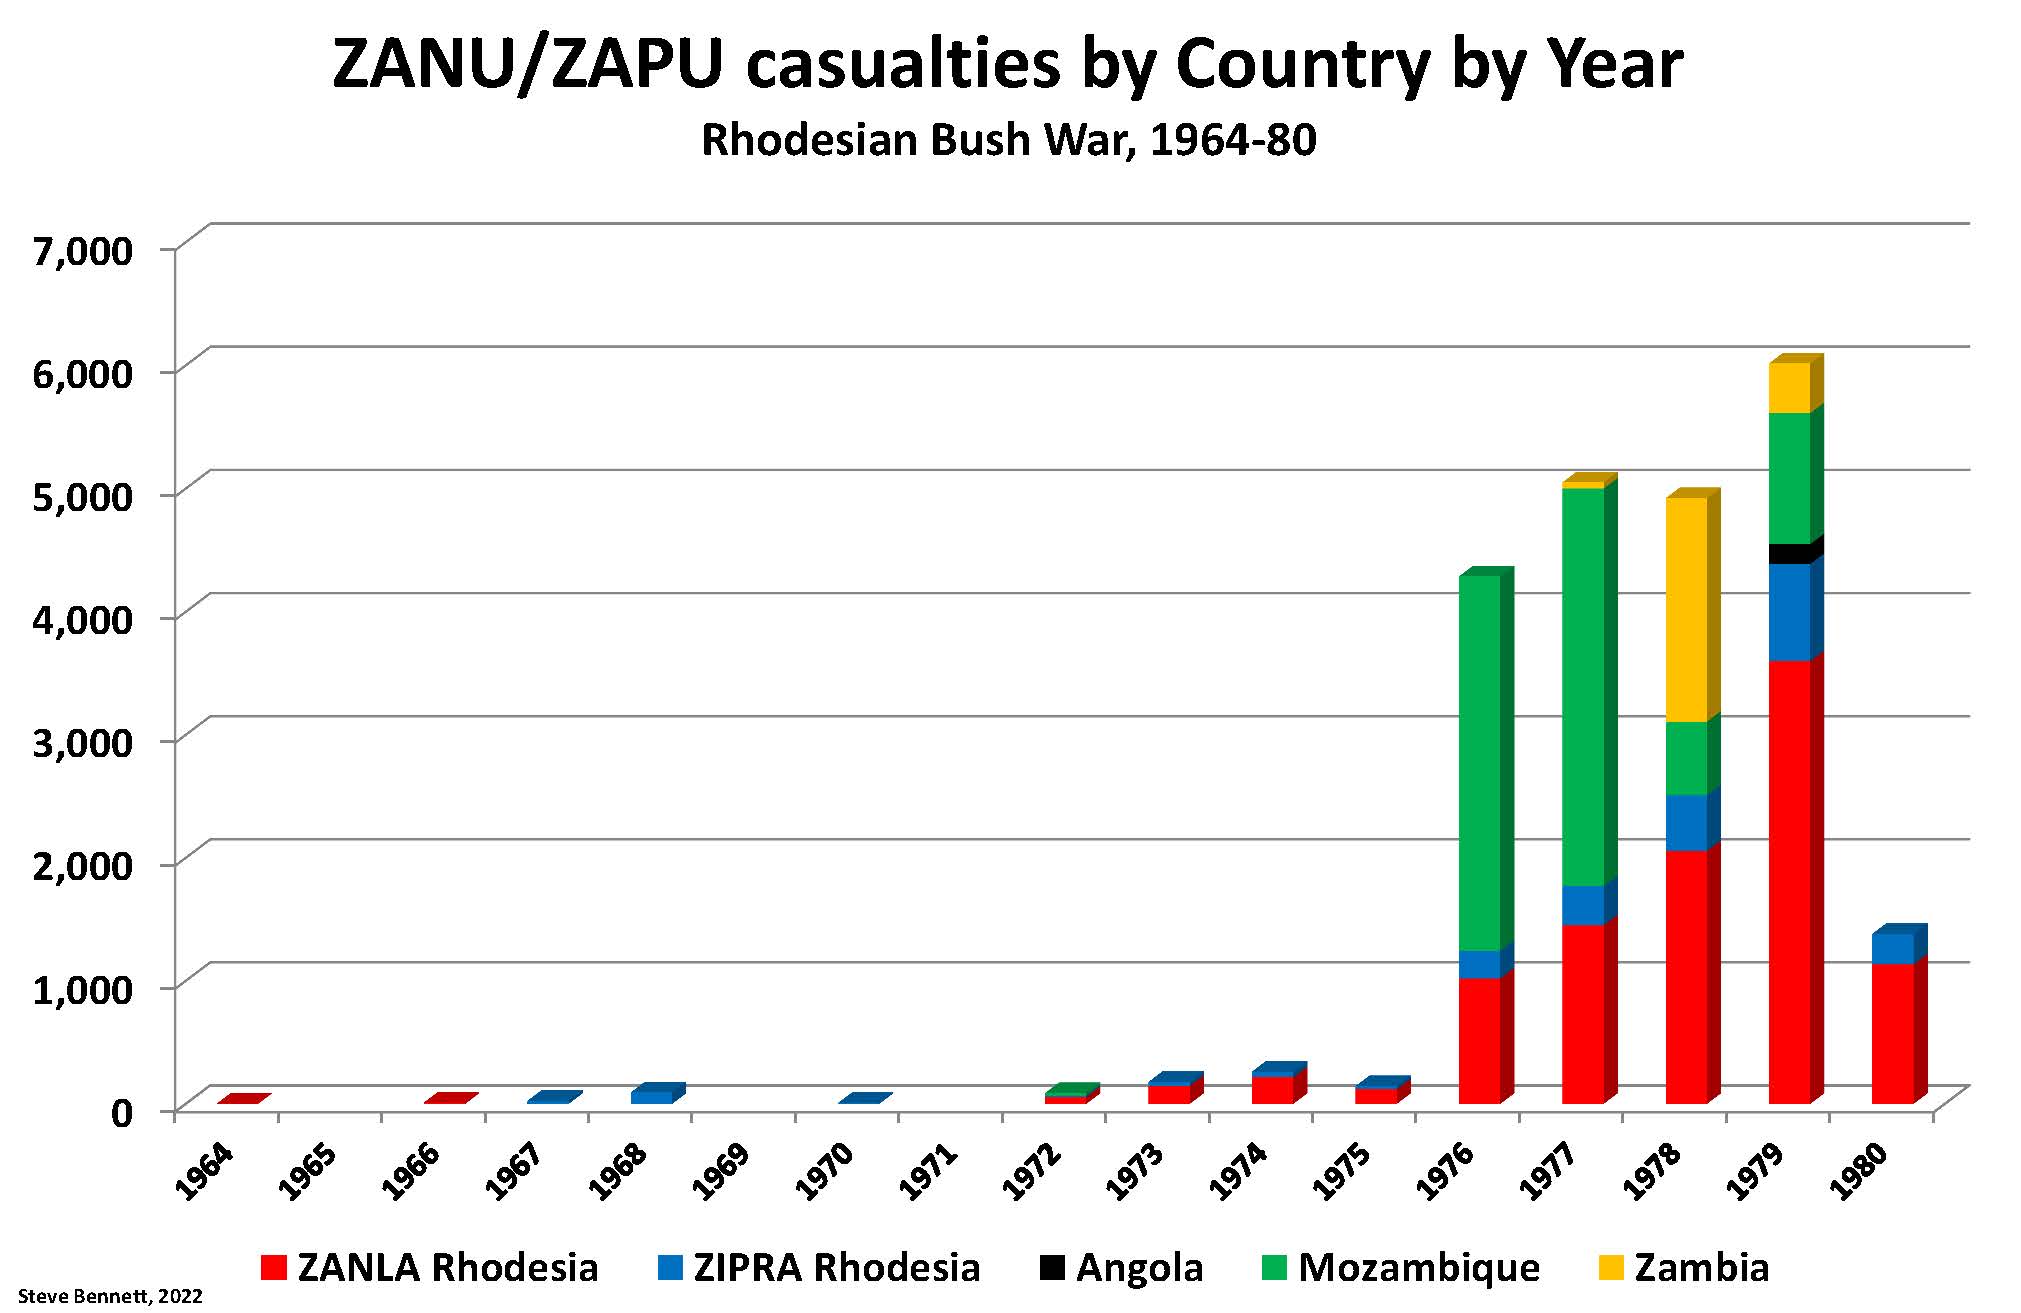 Casualties of ZANU/ZANLA and ZAPU/ZIPRA insurgents during Rhodesian Bush War by country